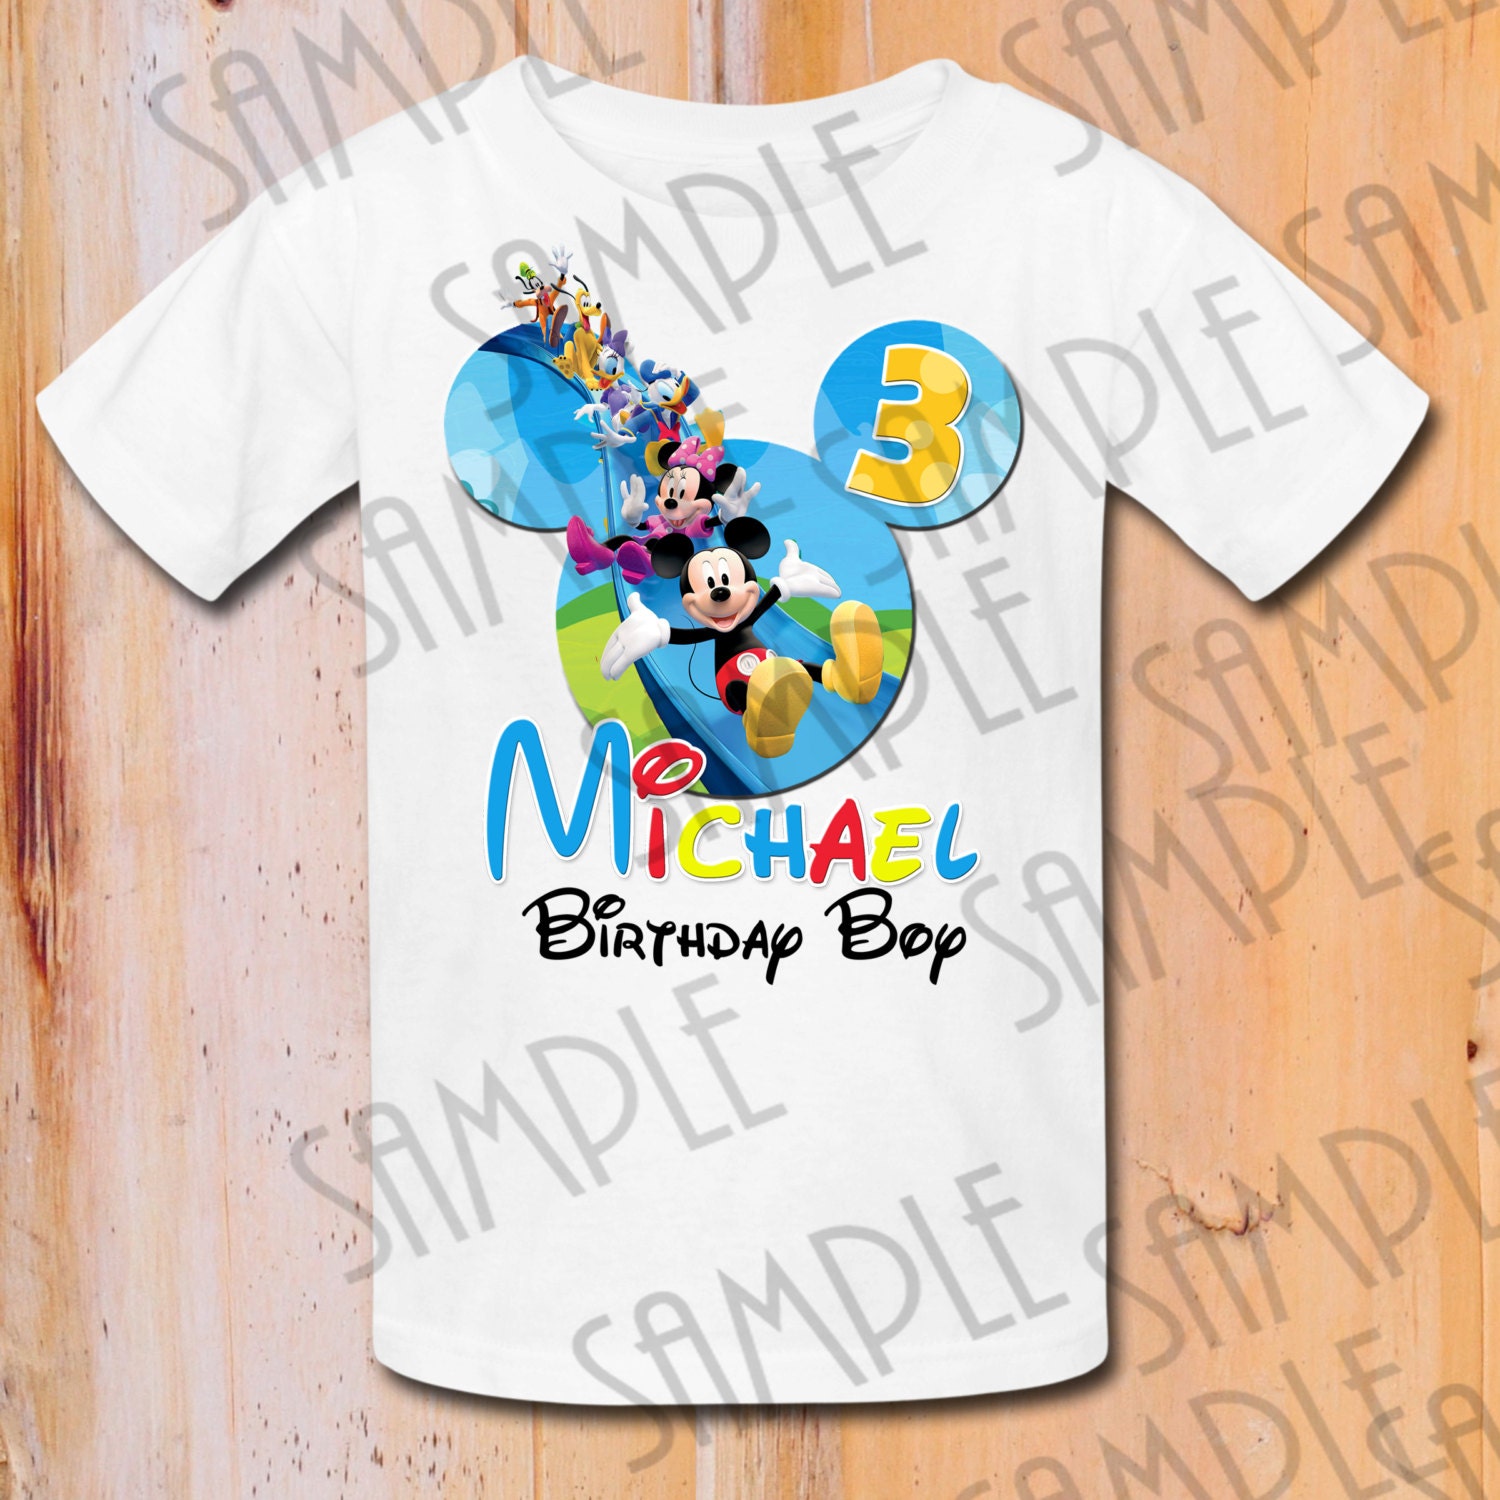 Mickey Mouse Birthday Shirt Personalized Rldm - personalize roblox birthday shirt ebay